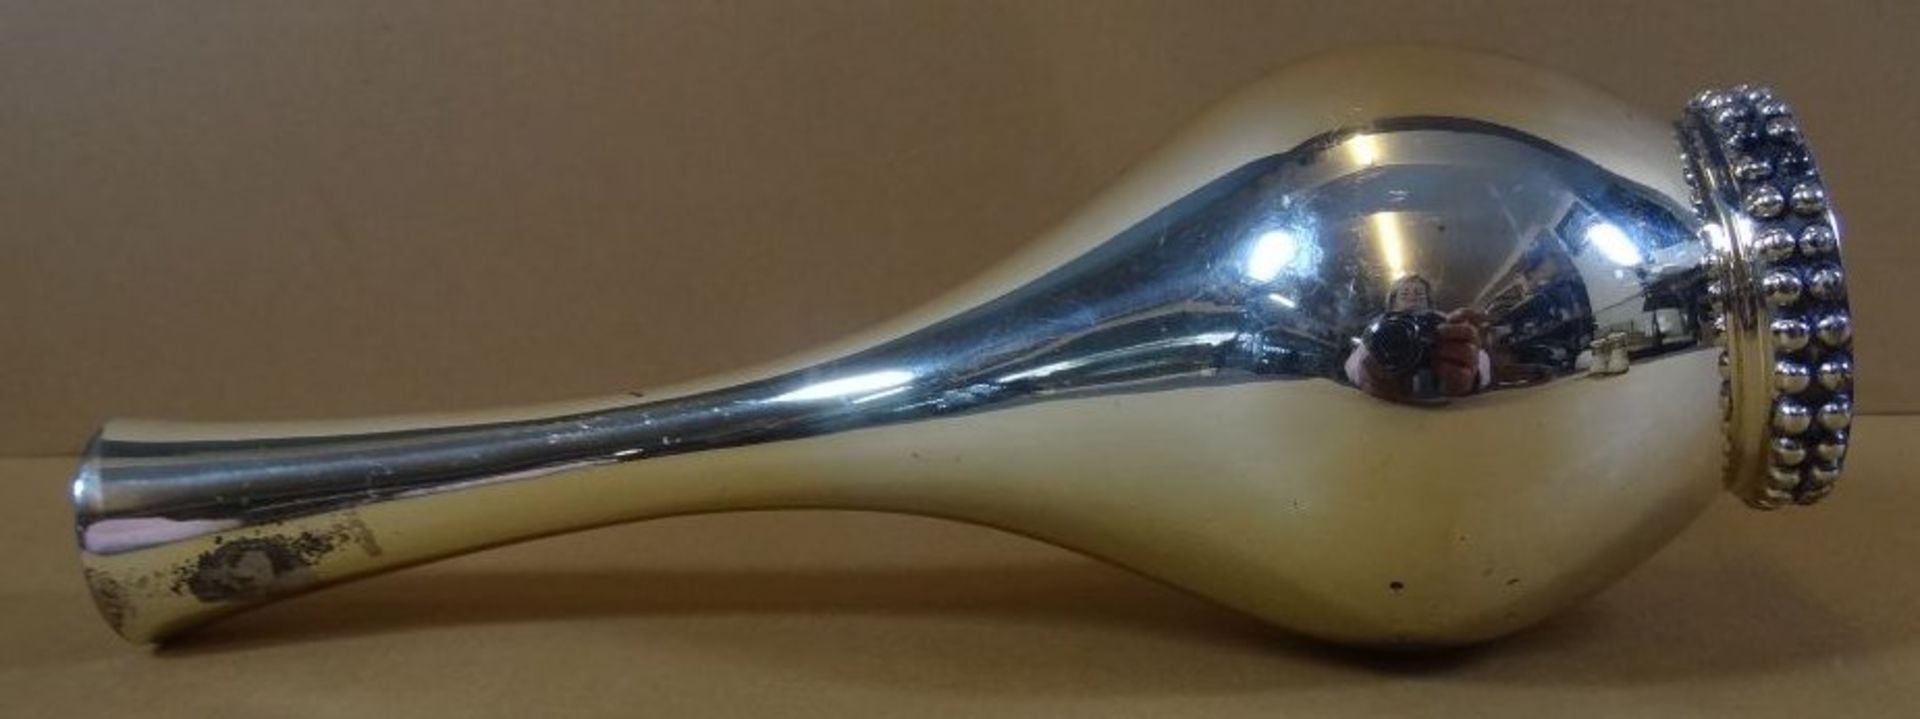 Vase, Silber-925-, H-15,5 cm, 90 gr. - Bild 3 aus 4